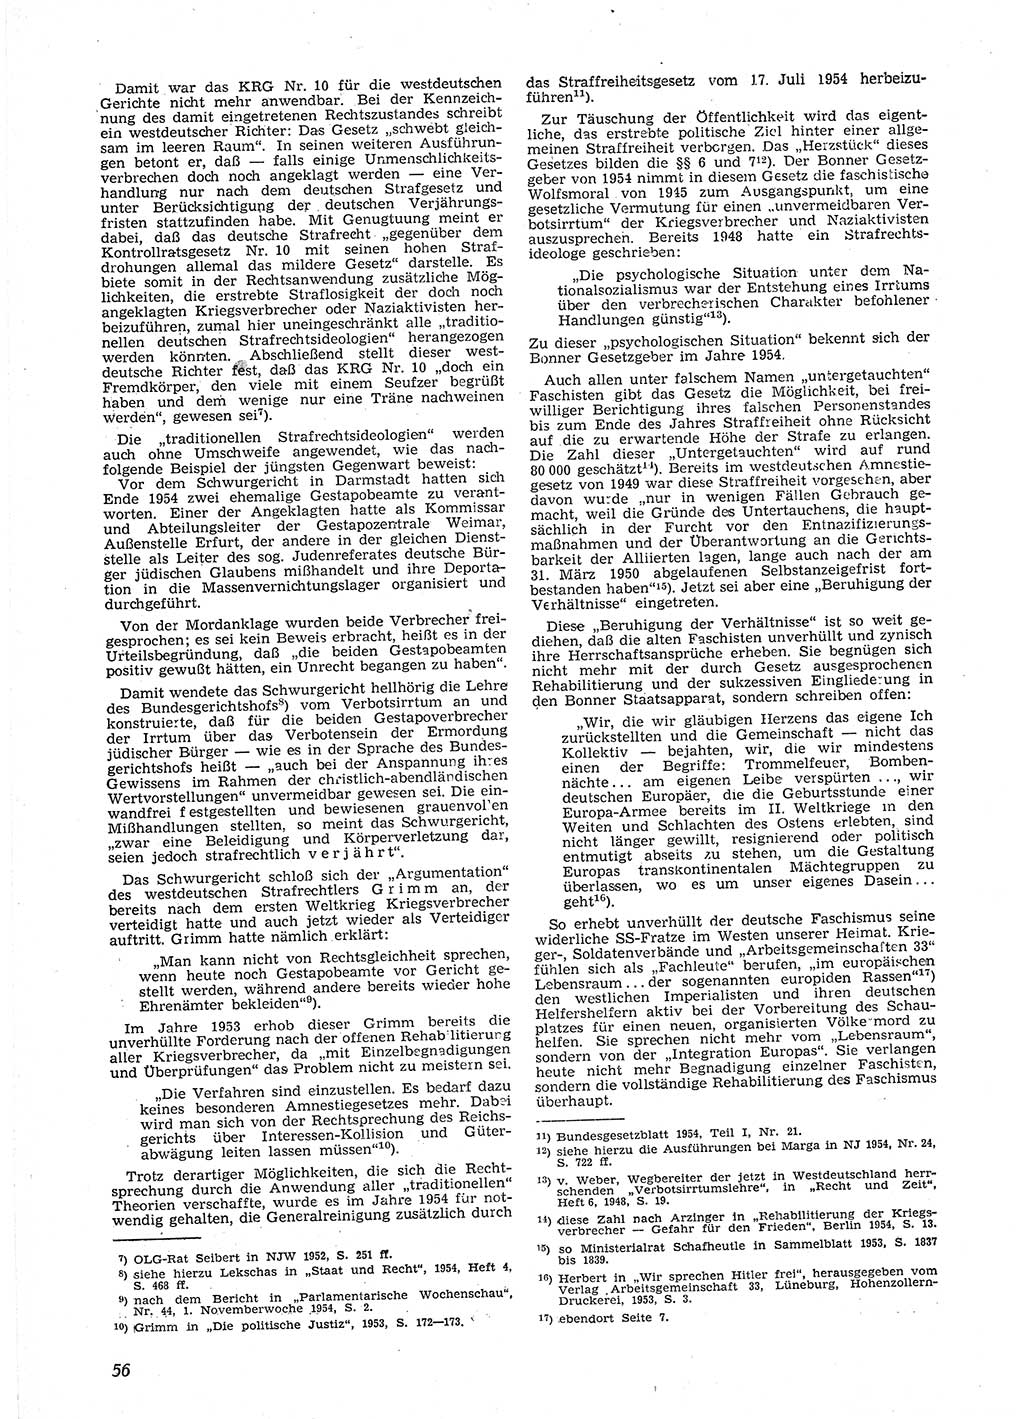 Neue Justiz (NJ), Zeitschrift für Recht und Rechtswissenschaft [Deutsche Demokratische Republik (DDR)], 9. Jahrgang 1955, Seite 56 (NJ DDR 1955, S. 56)